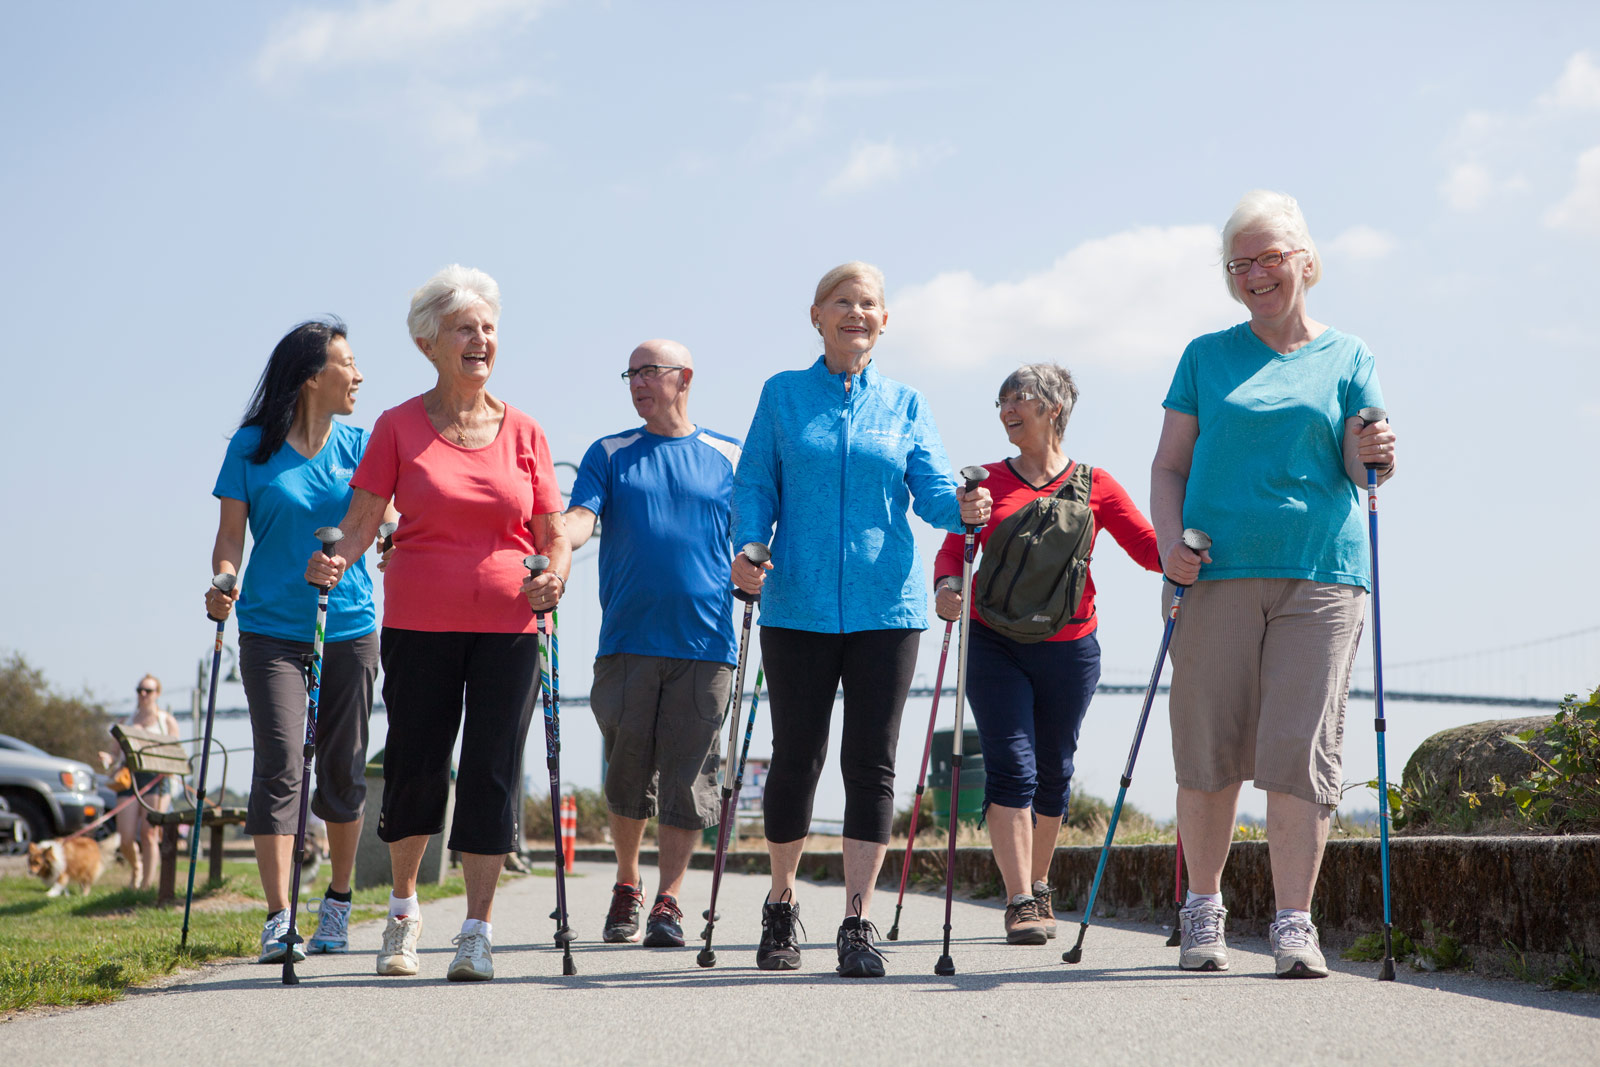 Effets de l'entraînement à la marche nordique sur la qualité de vie, l'équilibre et la mobilité fonctionnelle chez les personnes âgées : Un essai clinique randomisé